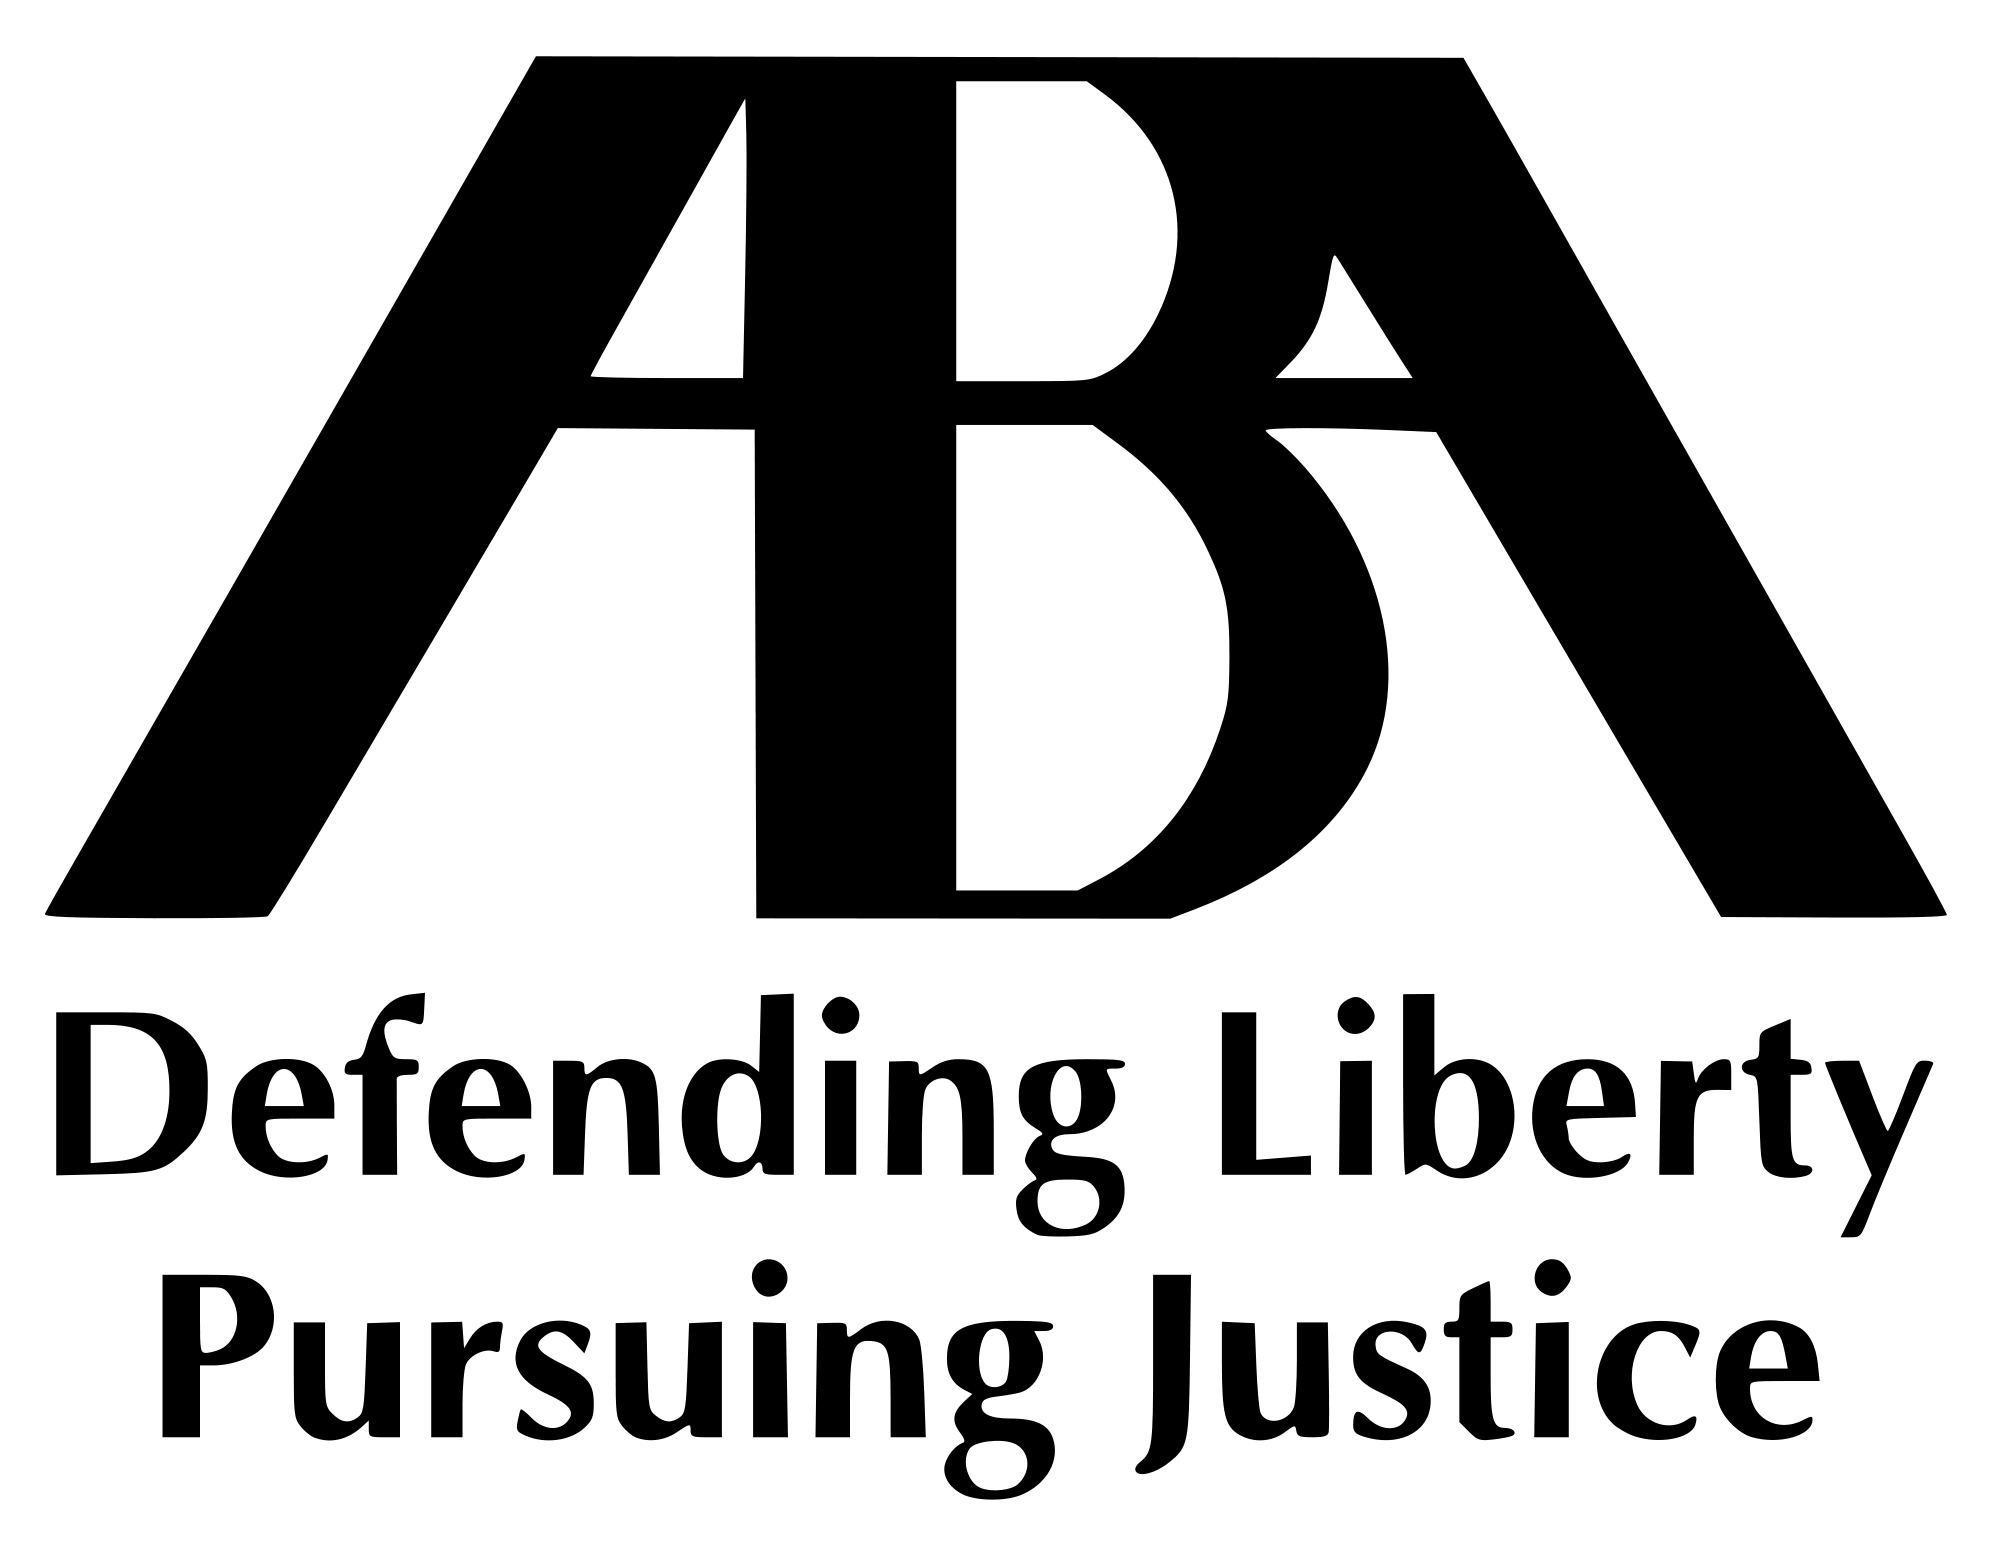 ABA; Logo PlusPng.com 